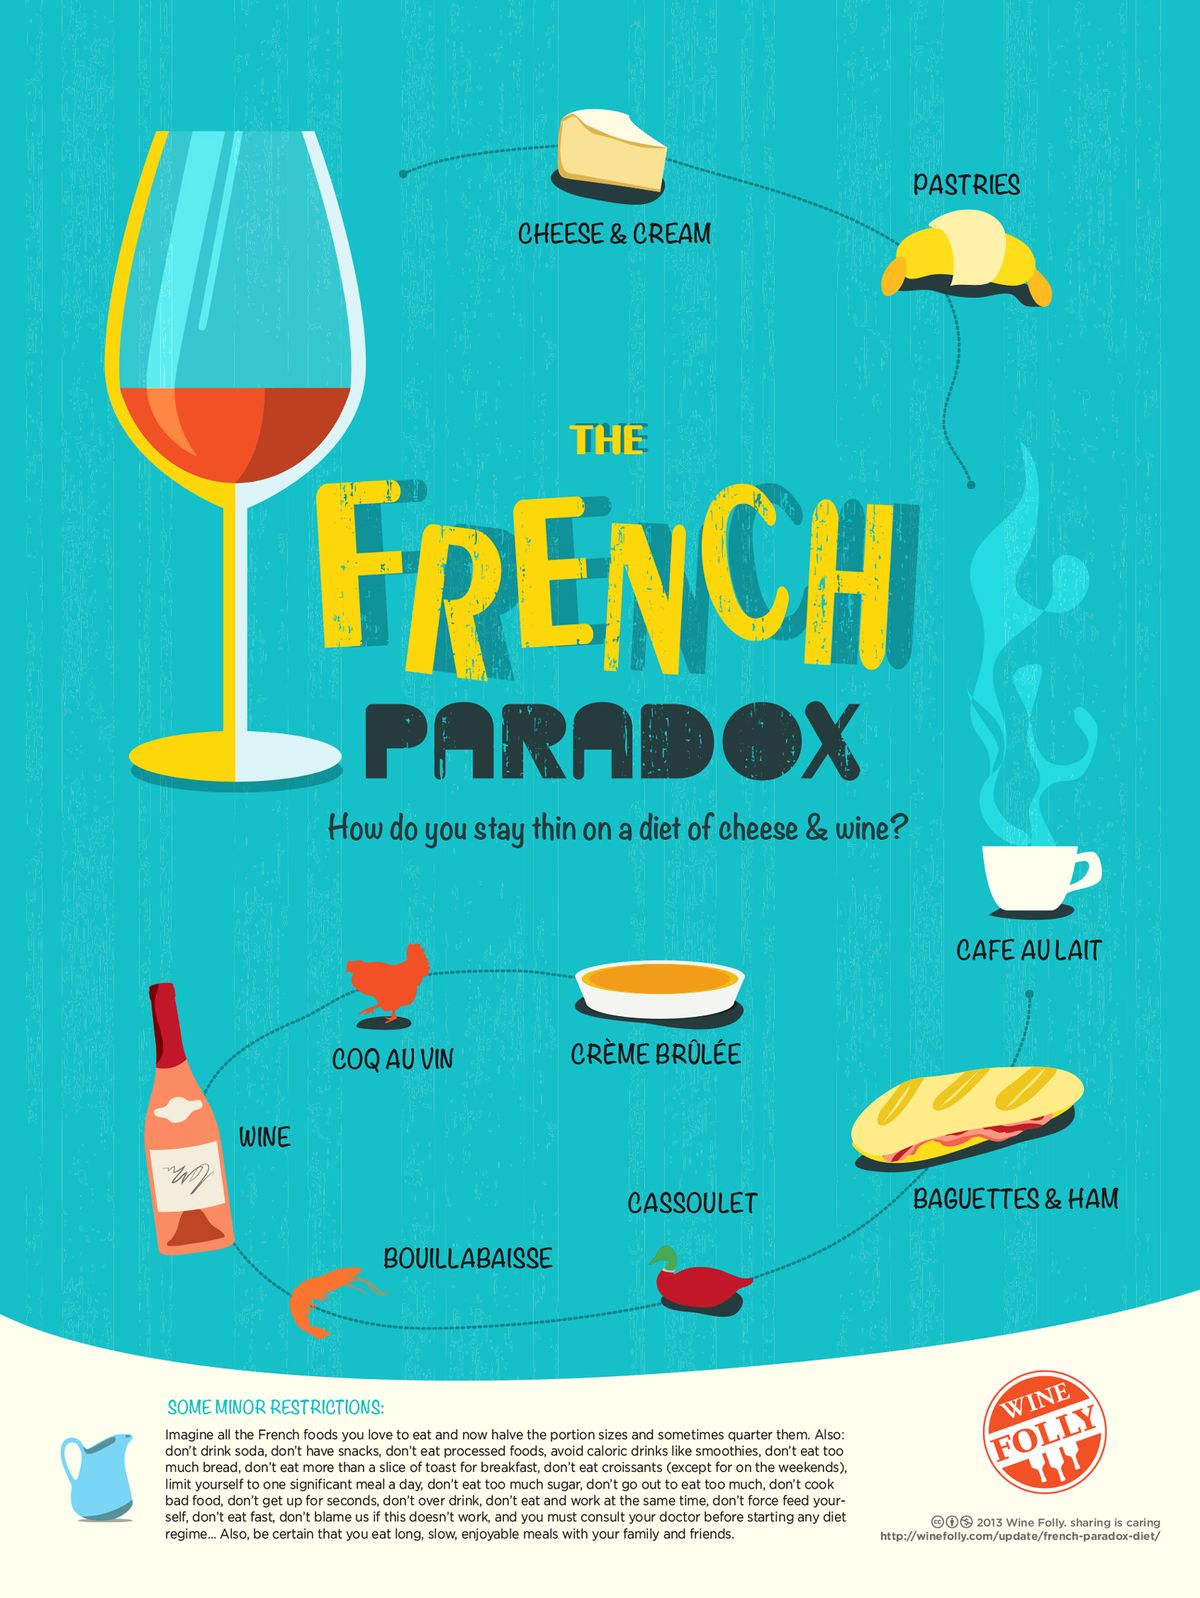 francoski-paradoks-dieta